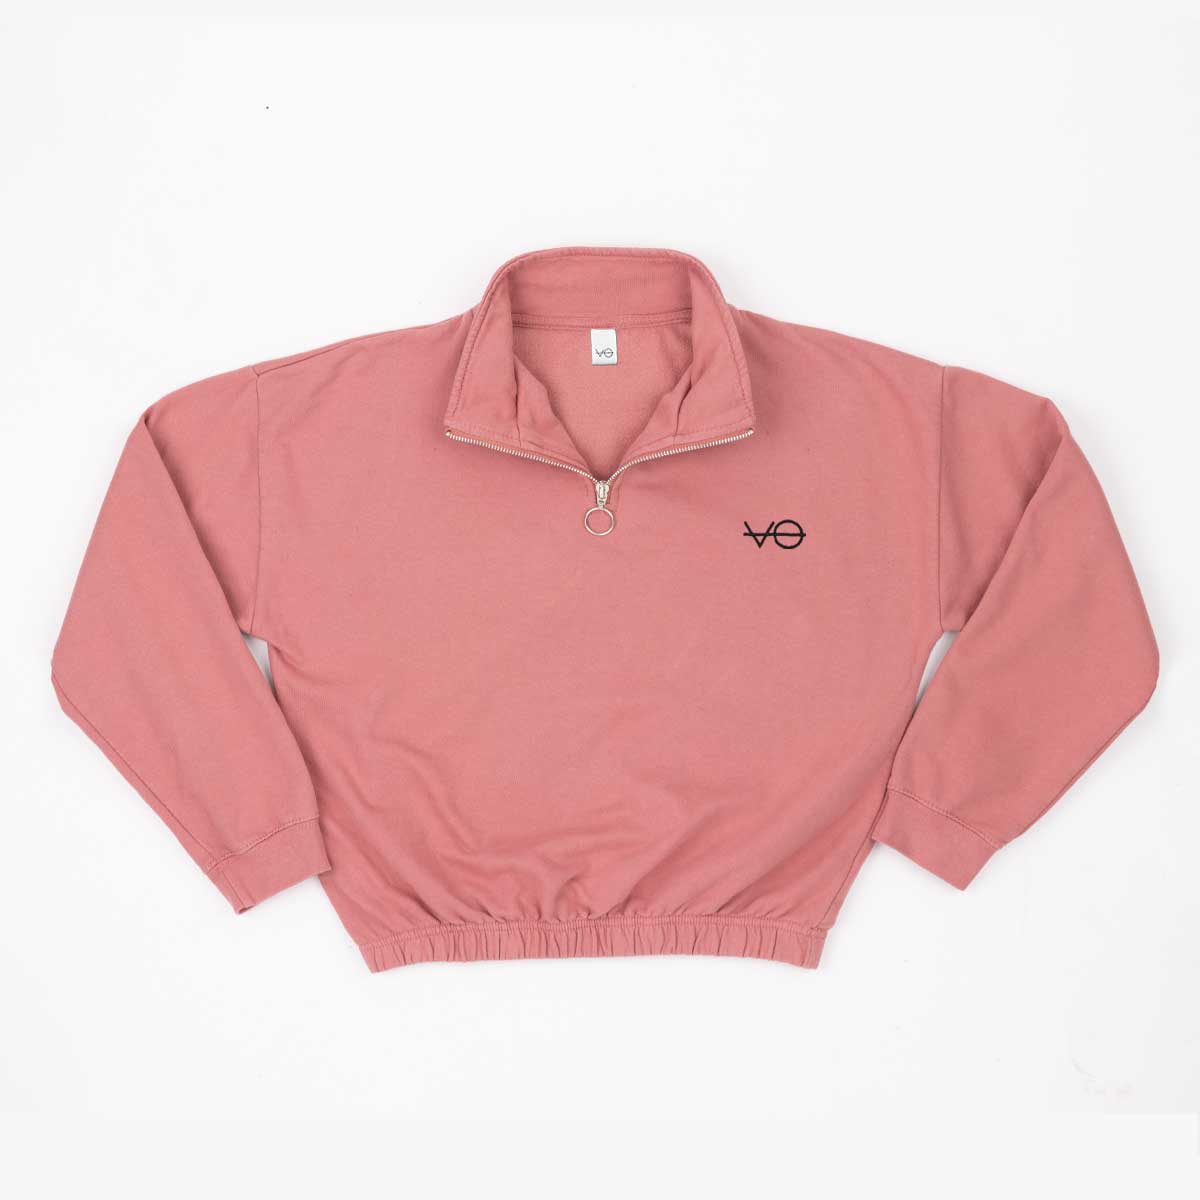 VO Embroidered 1/4 Zip Crop Sweatshirt product